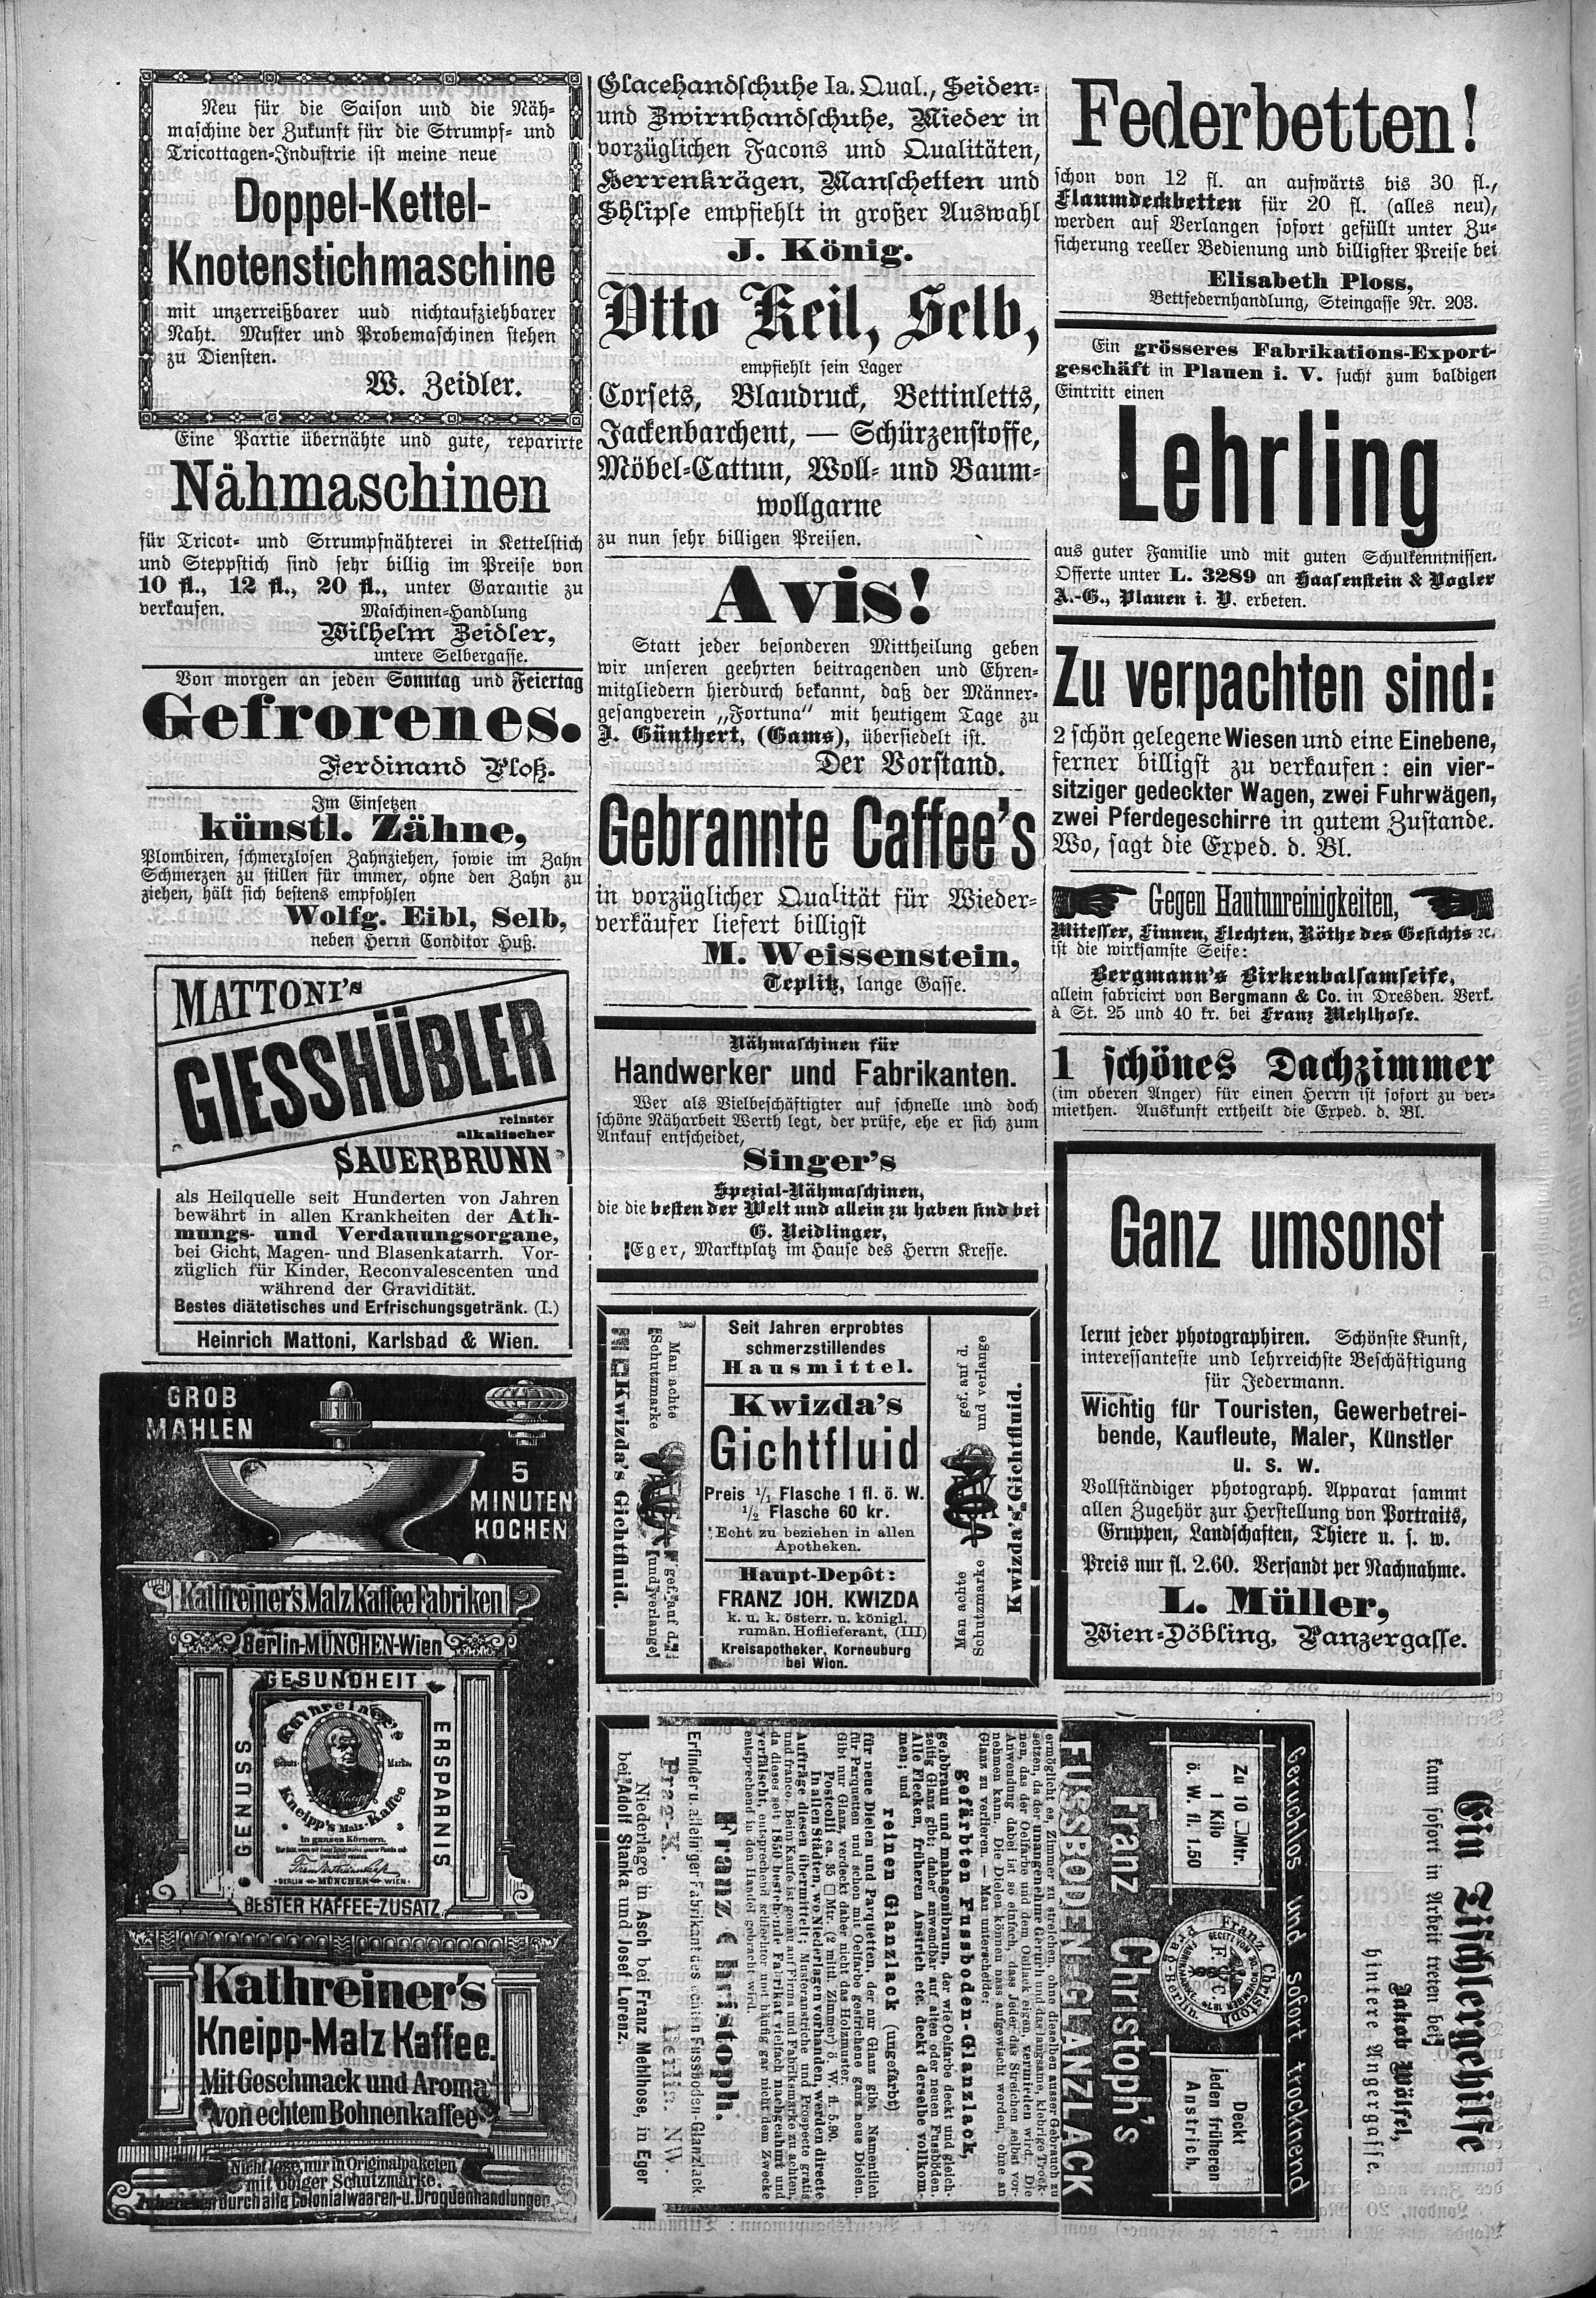 6. soap-ch_knihovna_ascher-zeitung-1892-05-21-n41_1710